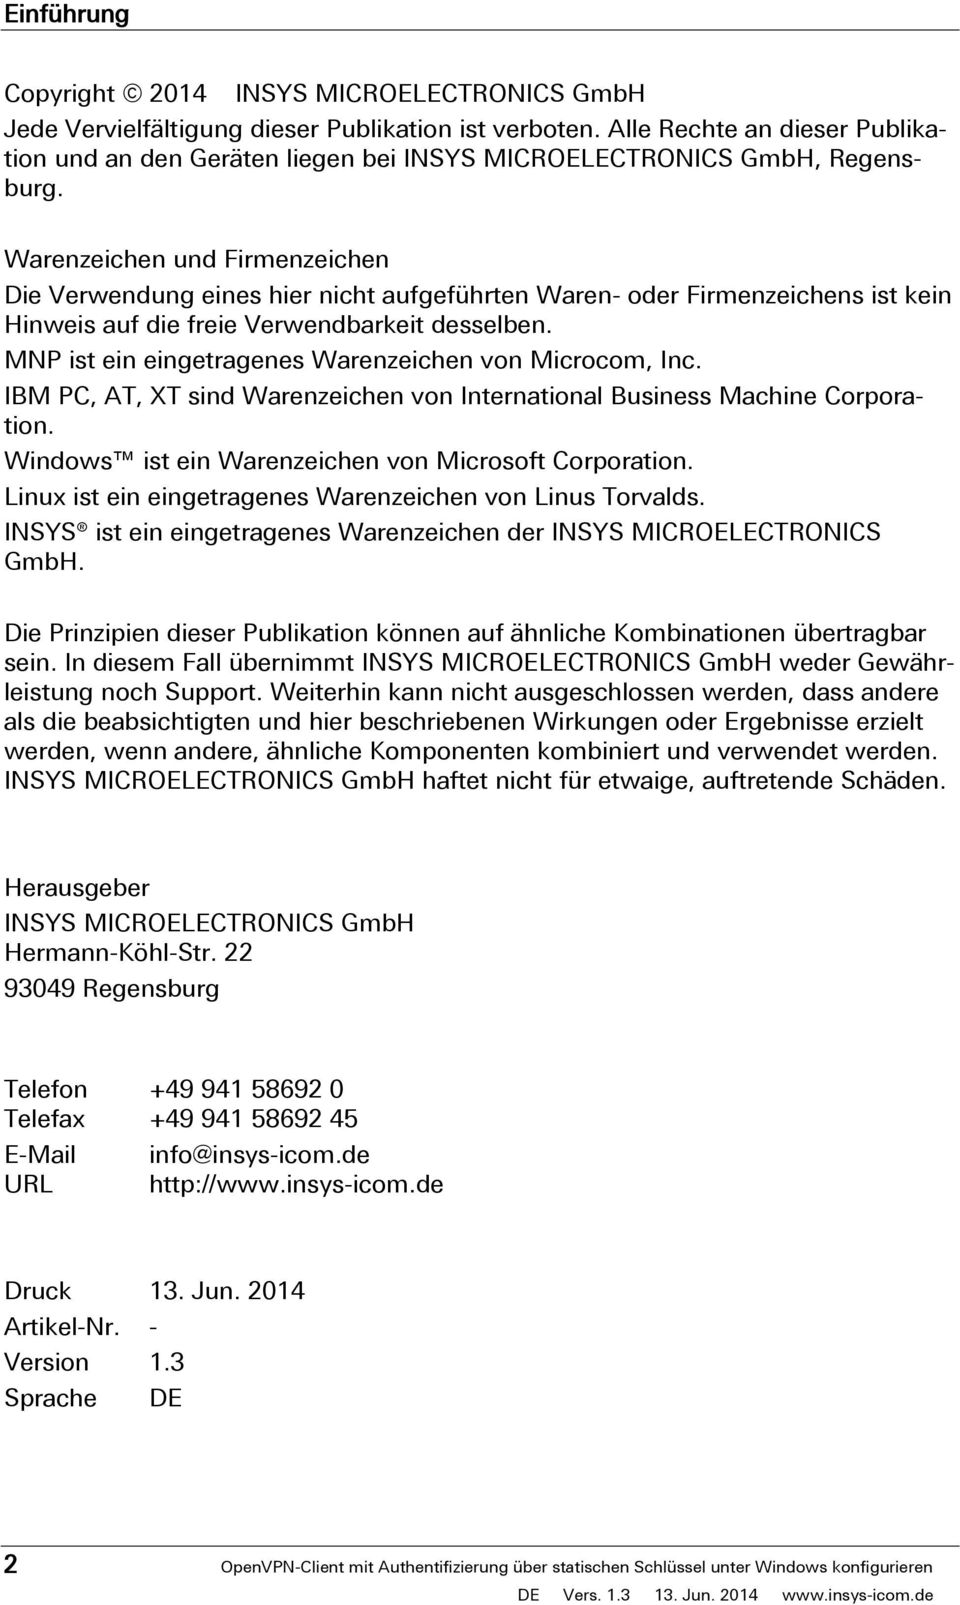 Alle Rechte an dieser Publikation und an den Geräten liegen bei INSYS MICROELECTRONICS GmbH, Regensburg.